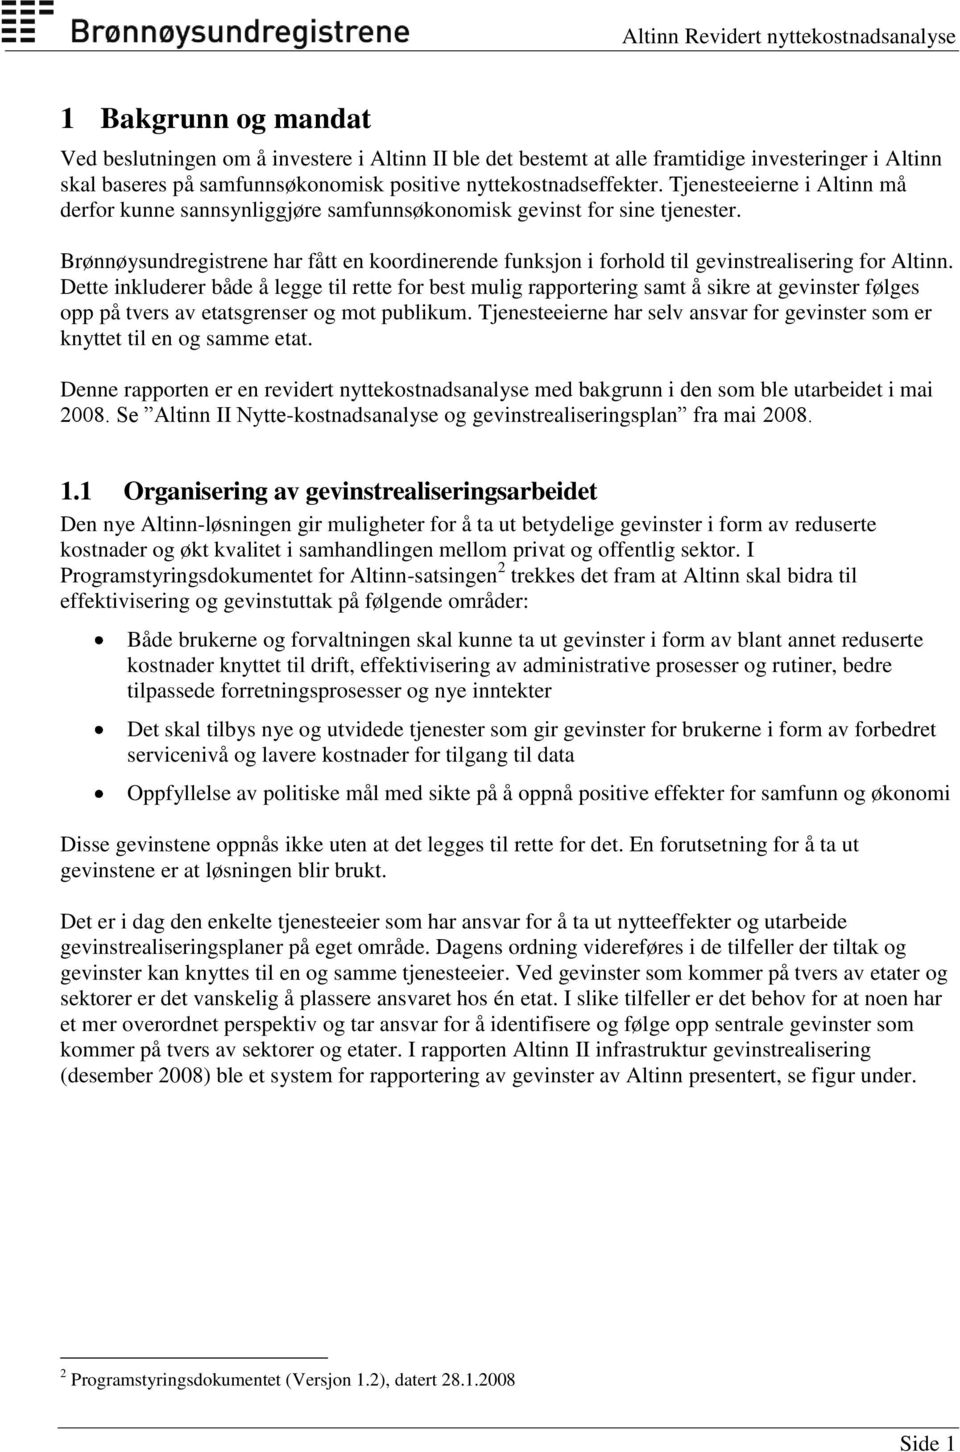 Brønnøysundregistrene har fått en koordinerende funksjon i forhold til gevinstrealisering for Altinn.